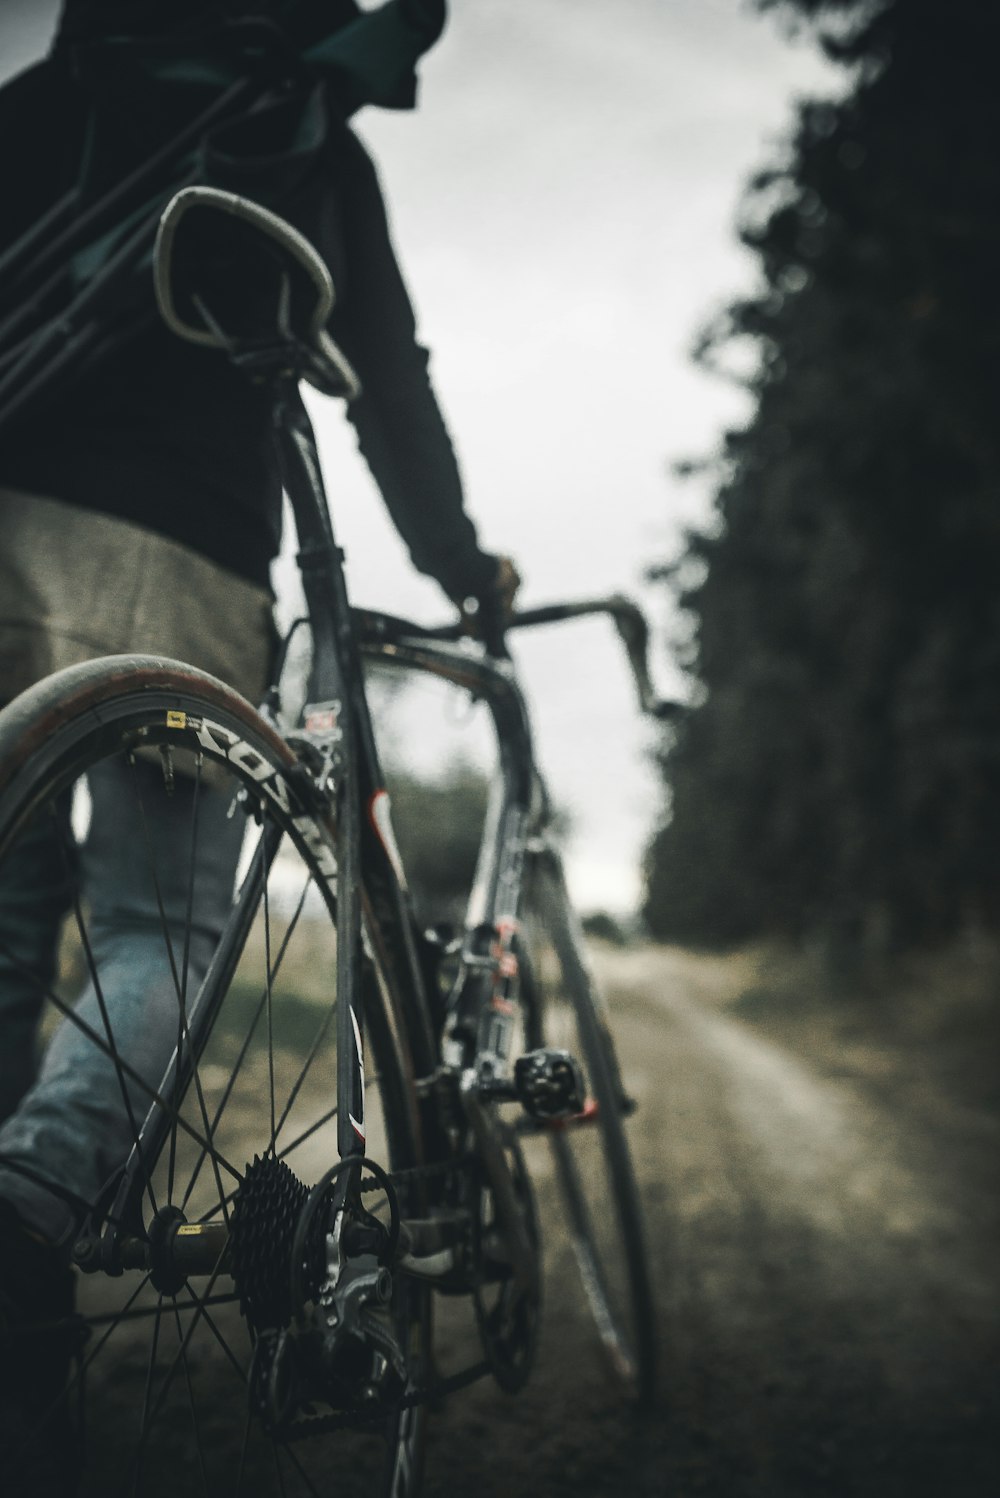 Fotografía de enfoque selectivo de una persona sosteniendo una bicicleta de carretera gris en la carretera